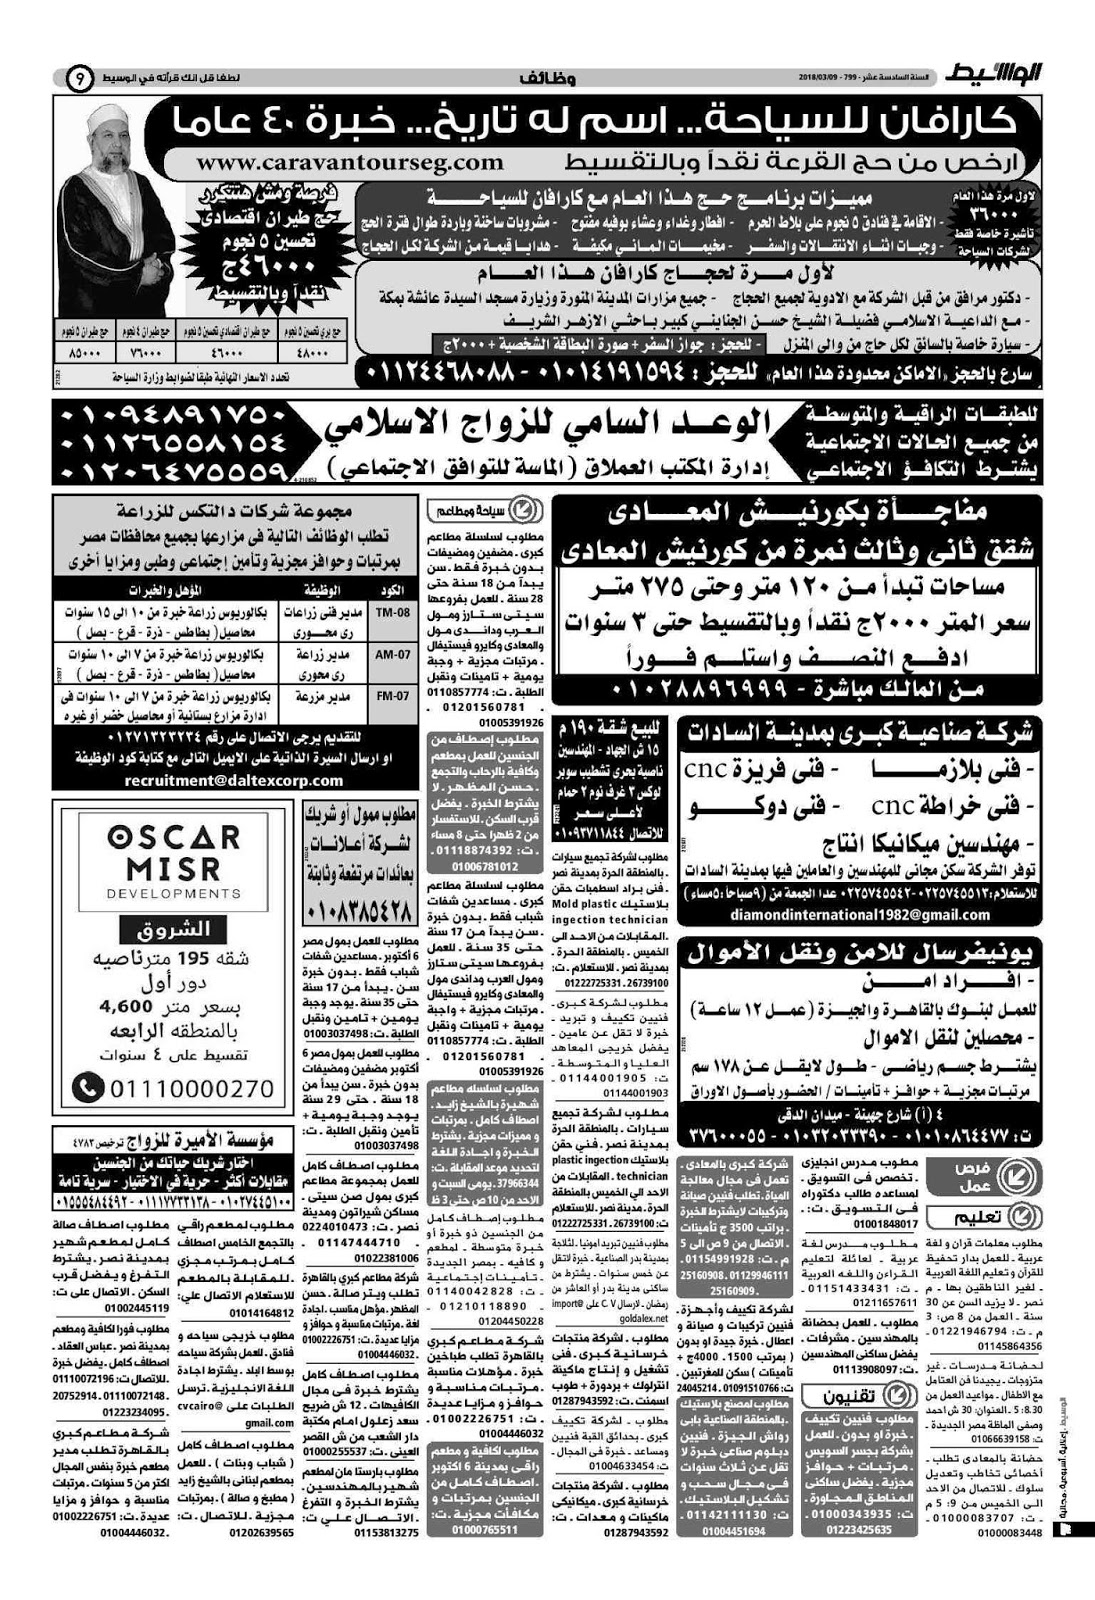 وظائف الوسيط مصر الجمعة 9 مارس 2018 واعلانات الوسيط